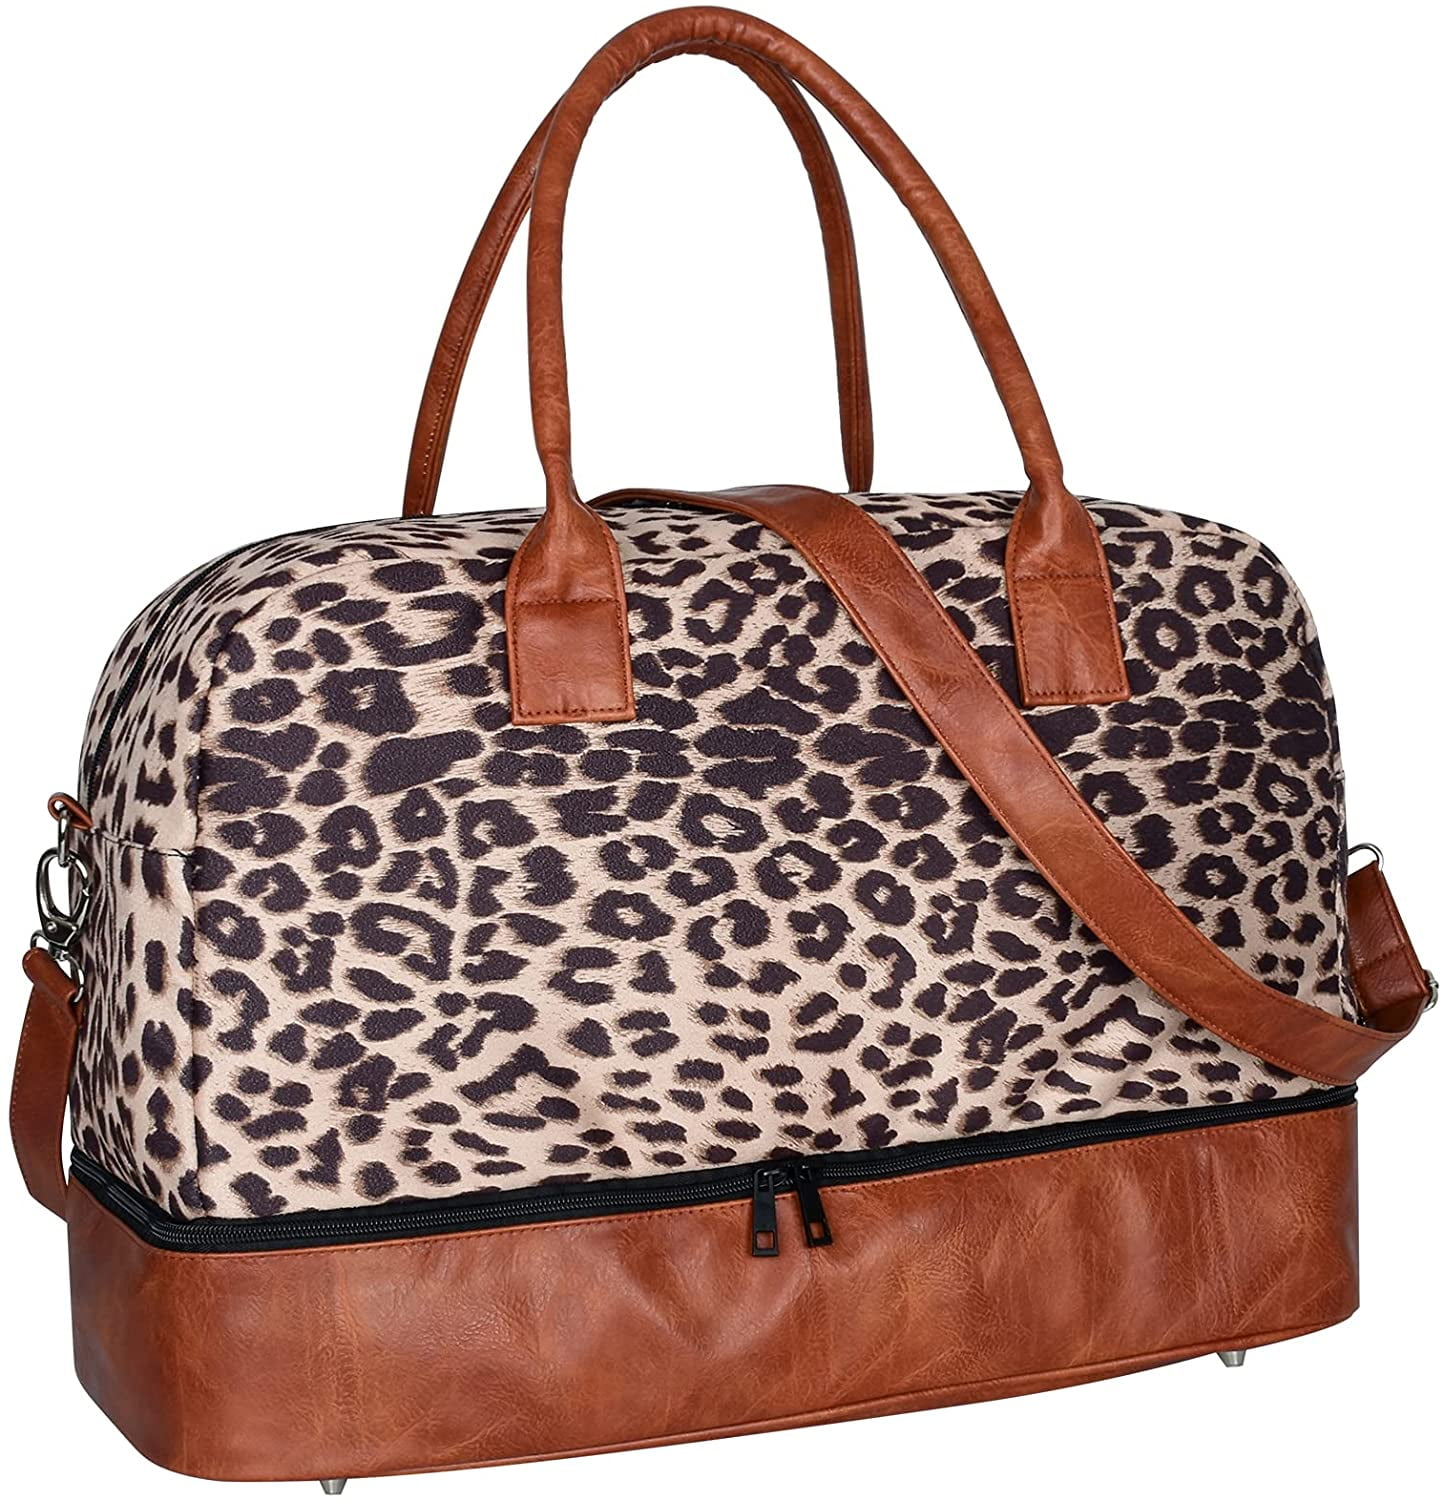 Women's Hand Bag PU Leather Travel Bag Large Capacity Ladies Luggage Holdall UK 